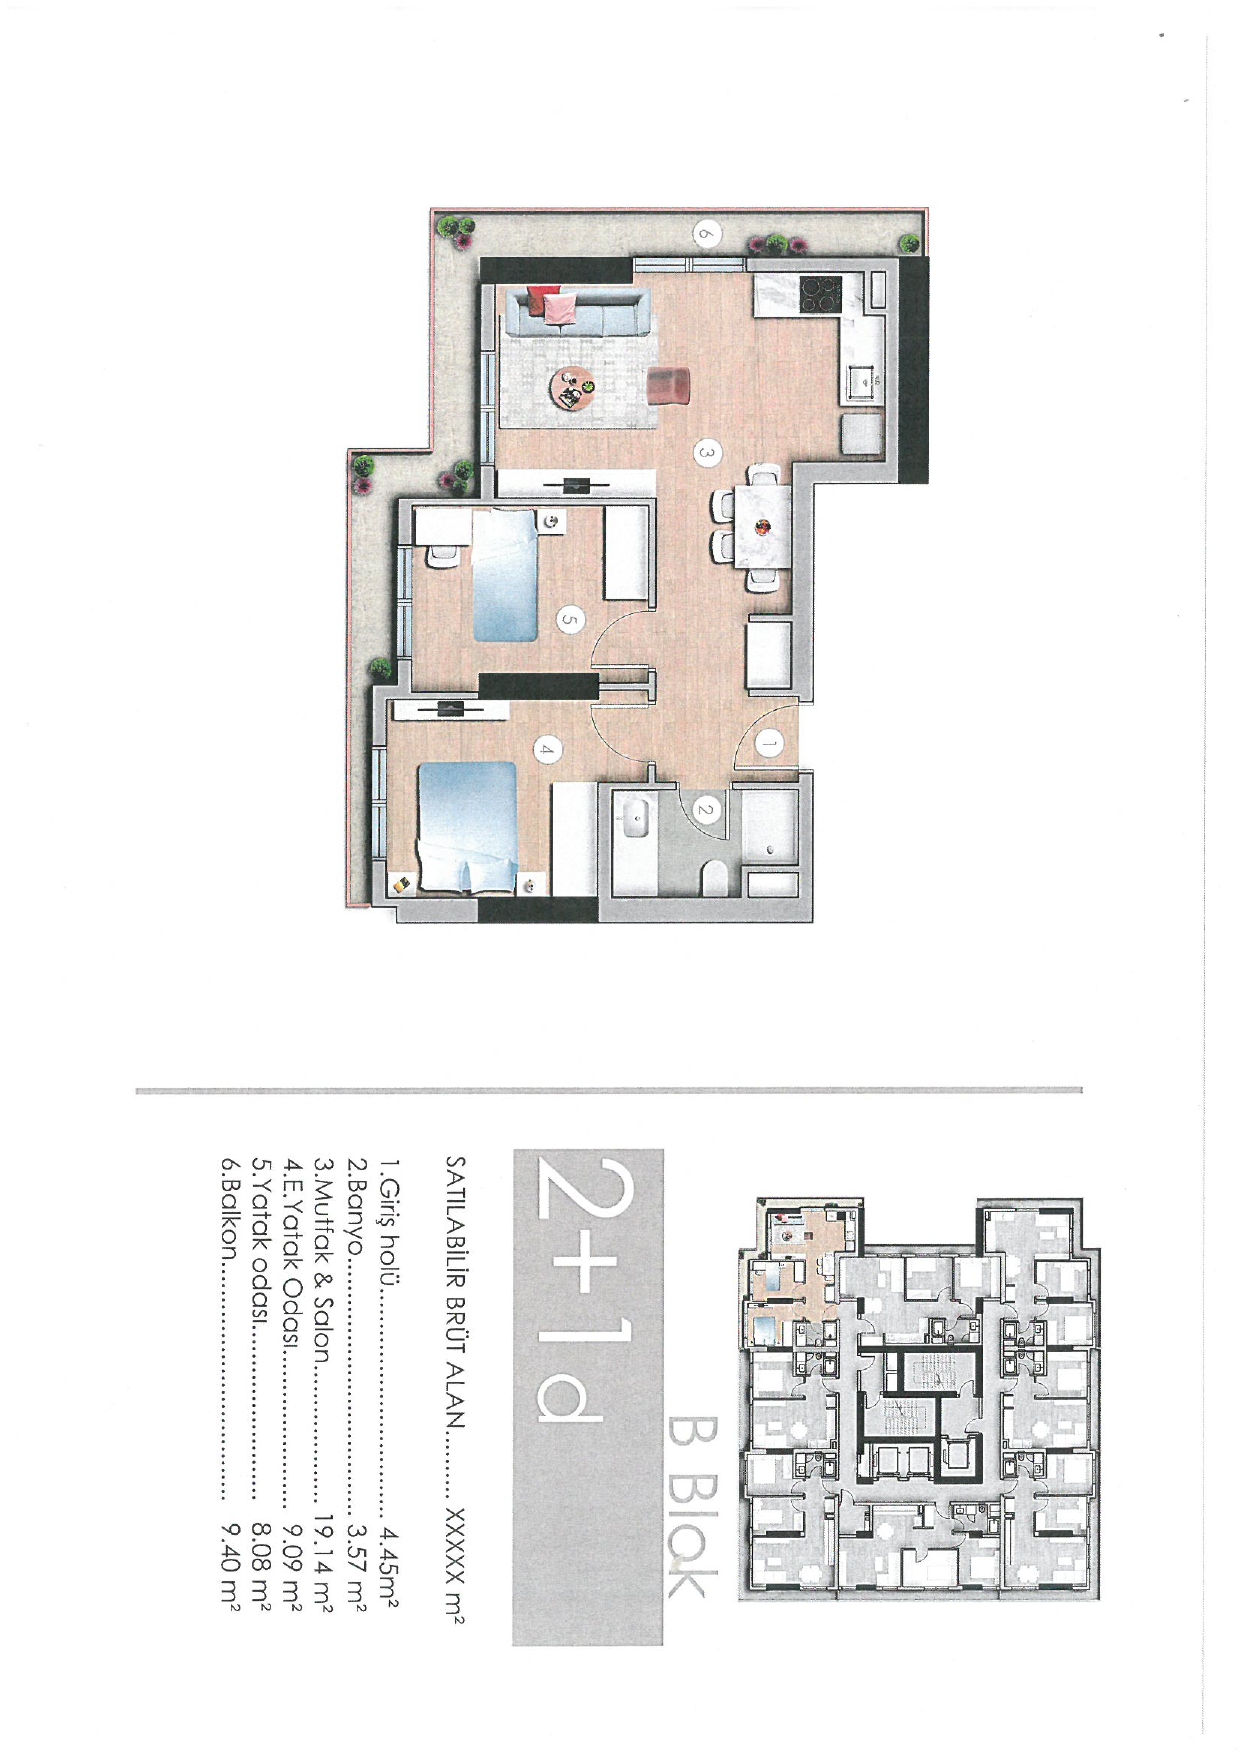 E5 Residence 2+1 Floor Plan 110m2